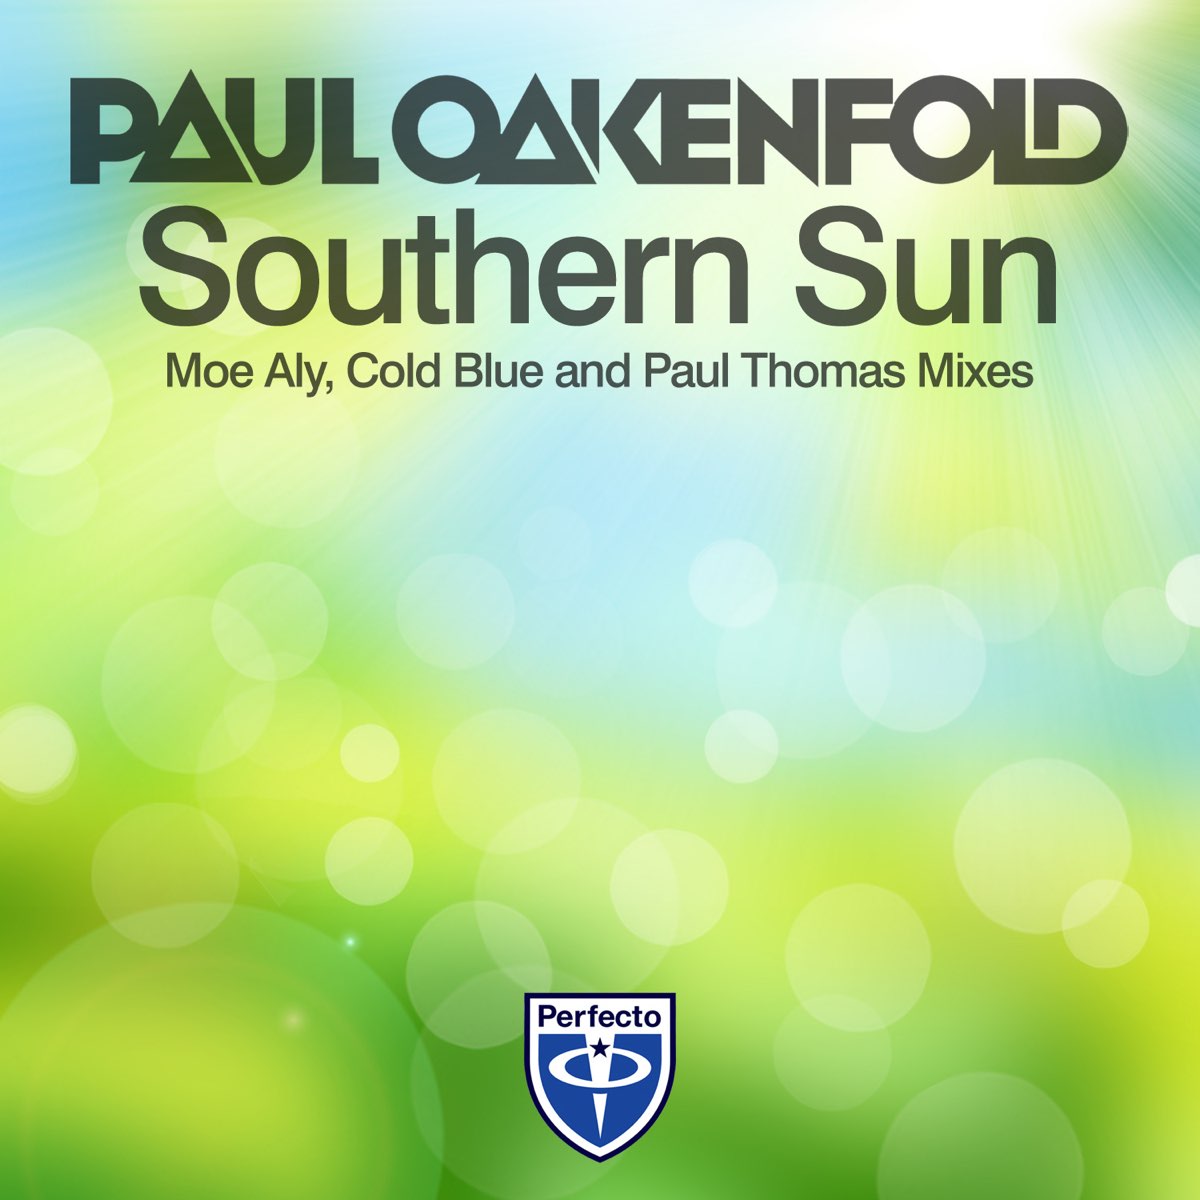 Paul oakenfold southern sun